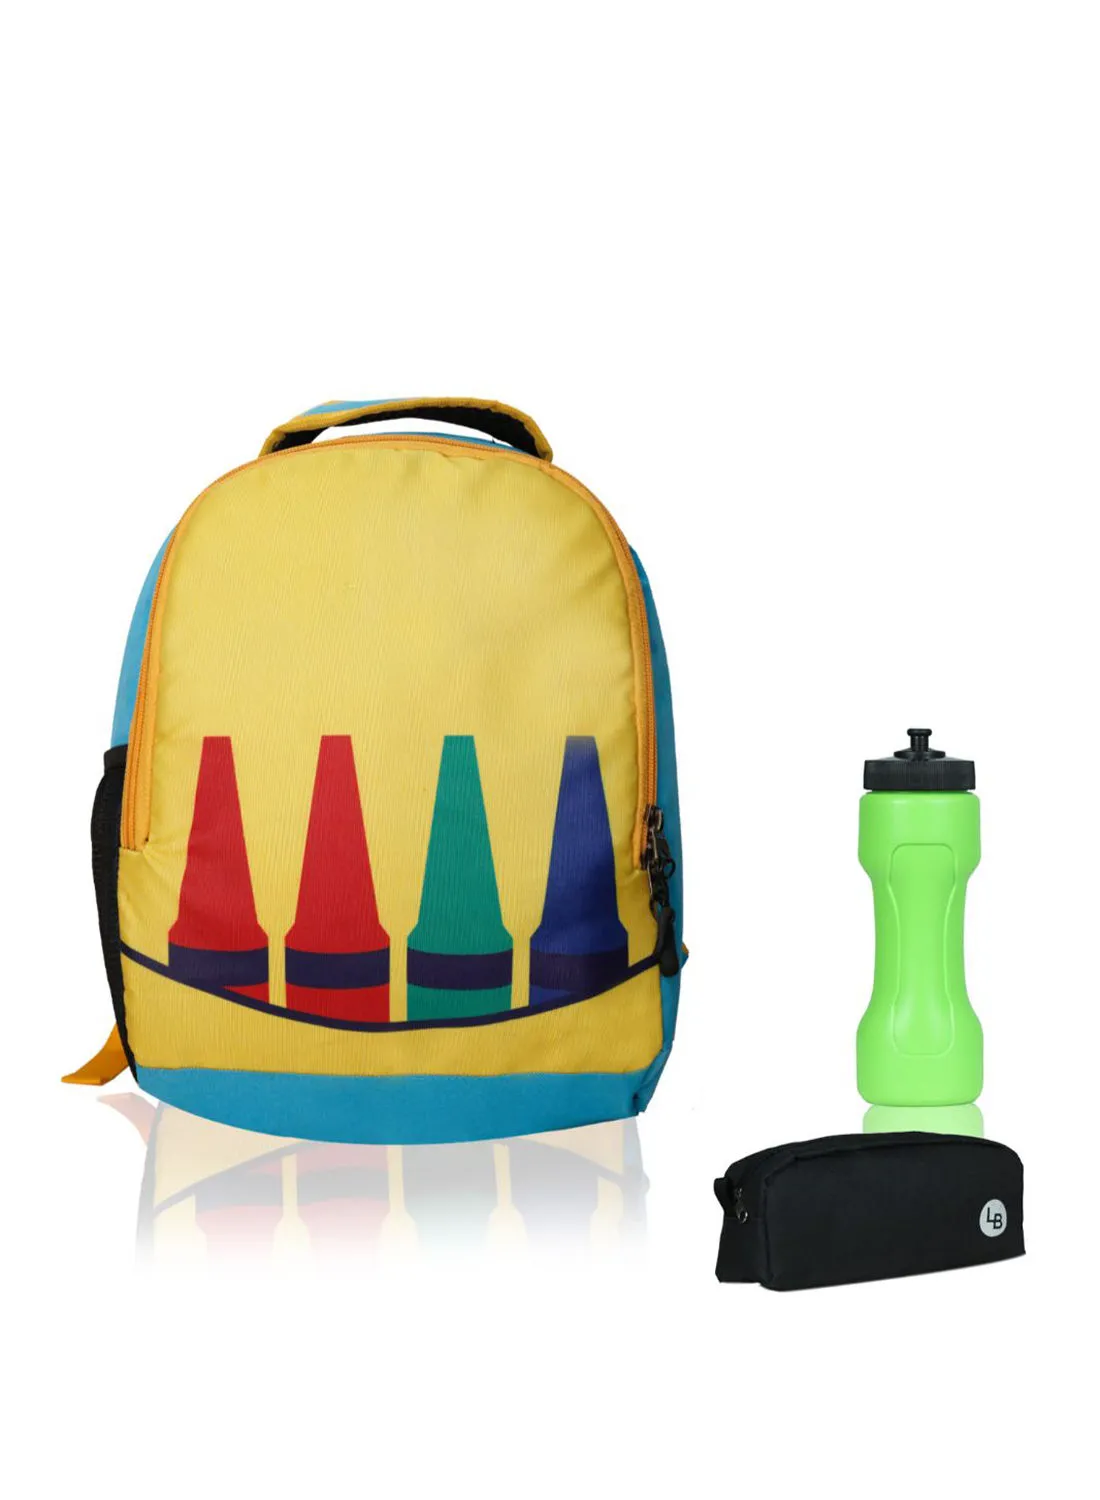 حقيبة ظهر LIONBONE Kids مع Sipper والحقيبة أصفر / أسود / أخضر